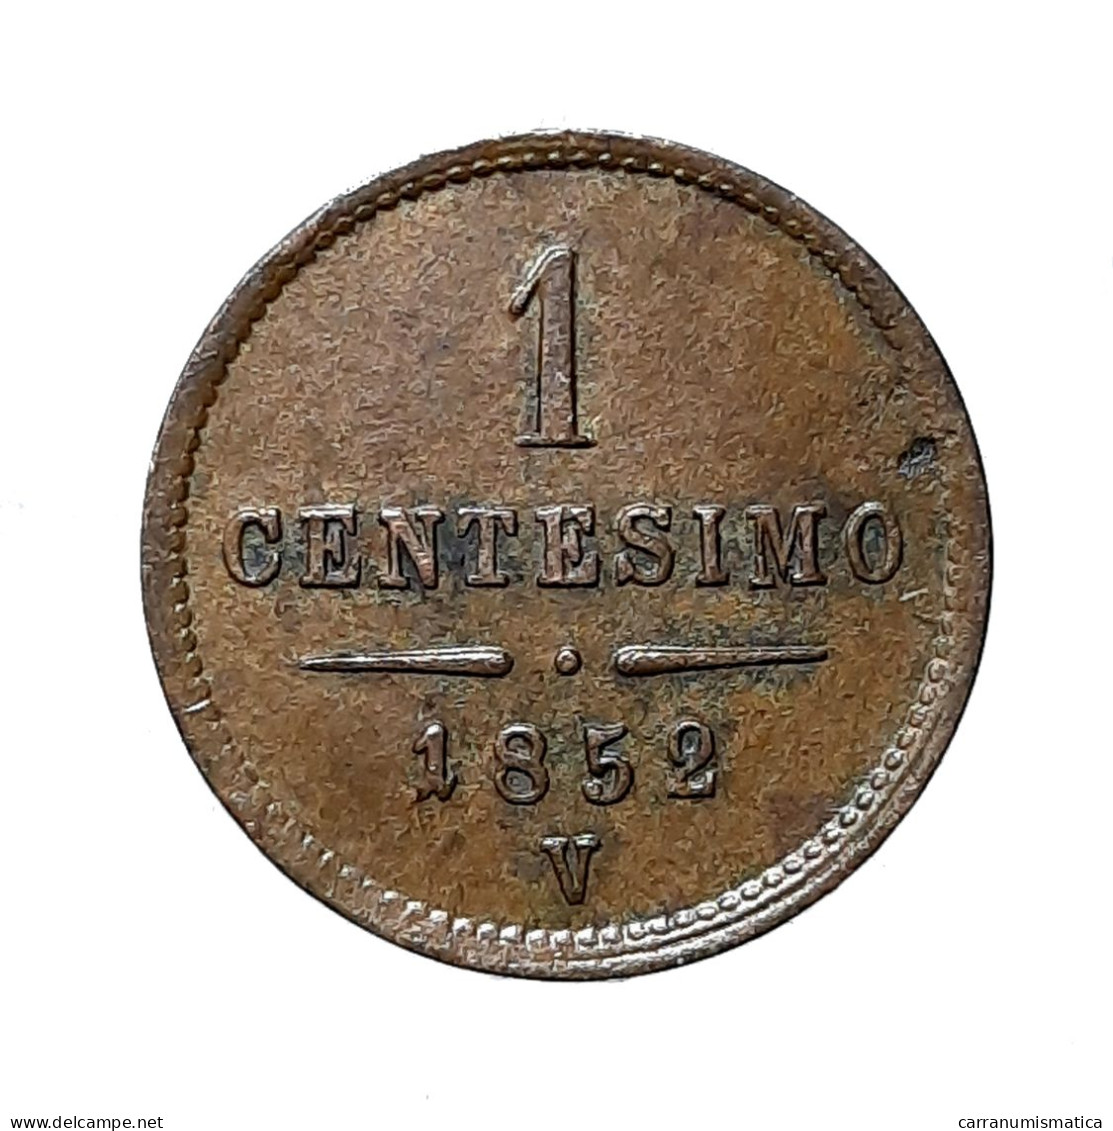 [NC] LOMBARDO VENETO - 1 CENTESIMO 1852 VENEZIA (k0351) - Lombardie-Vénétie